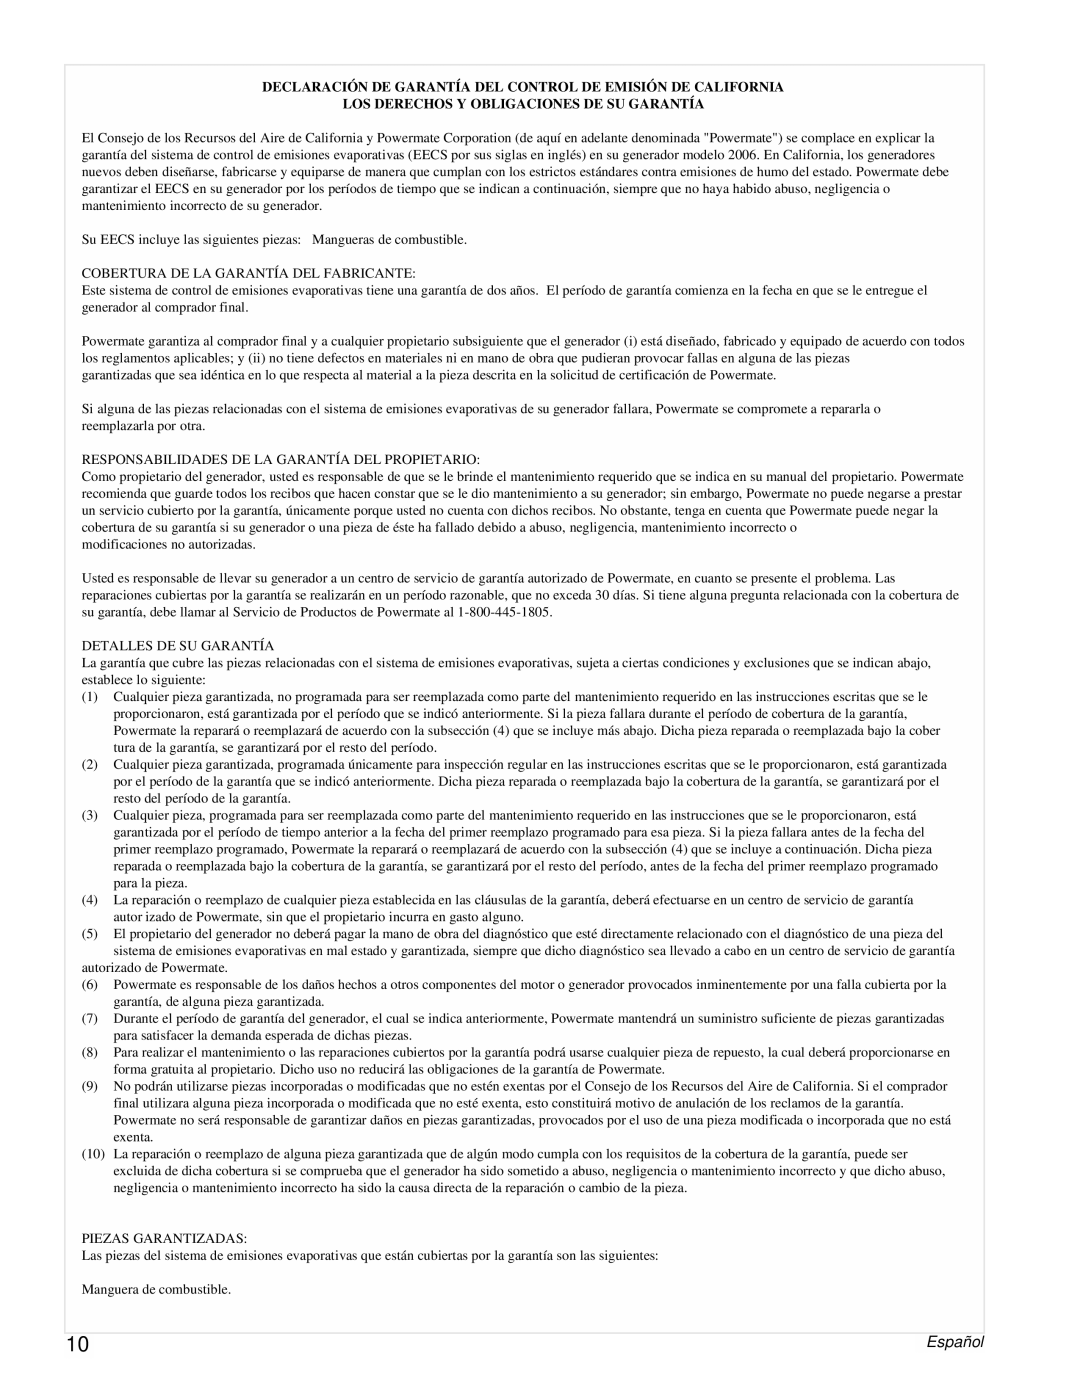 Powermate PMC431800.01 manual Los Derechos Y Obligaciones De Su Garantía, Español 